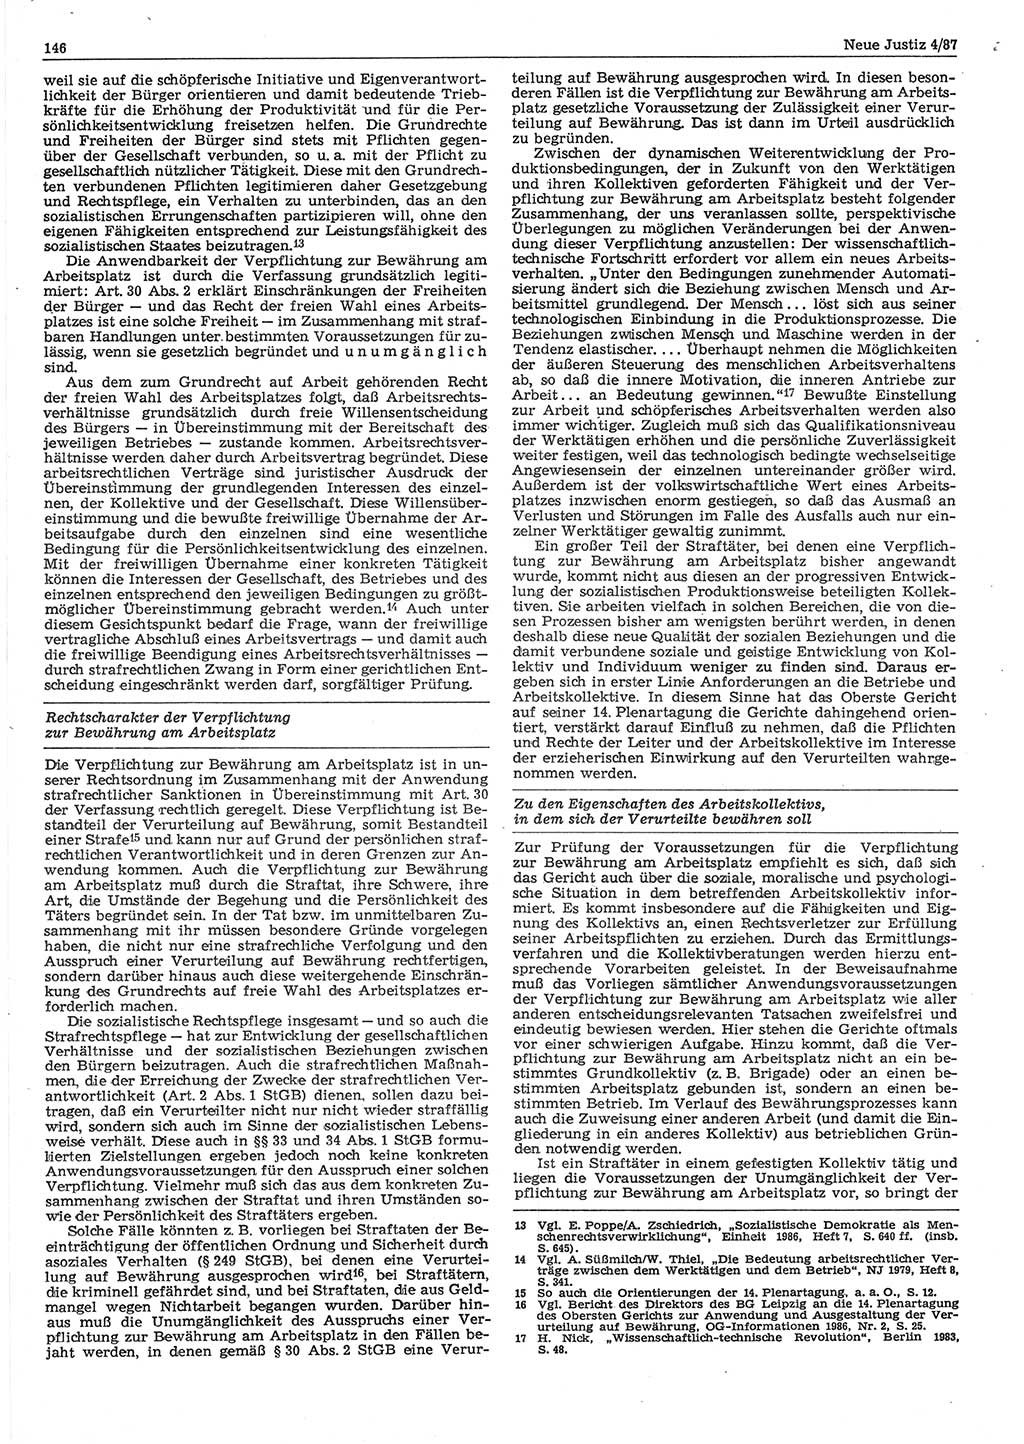 Neue Justiz (NJ), Zeitschrift für sozialistisches Recht und Gesetzlichkeit [Deutsche Demokratische Republik (DDR)], 41. Jahrgang 1987, Seite 146 (NJ DDR 1987, S. 146)